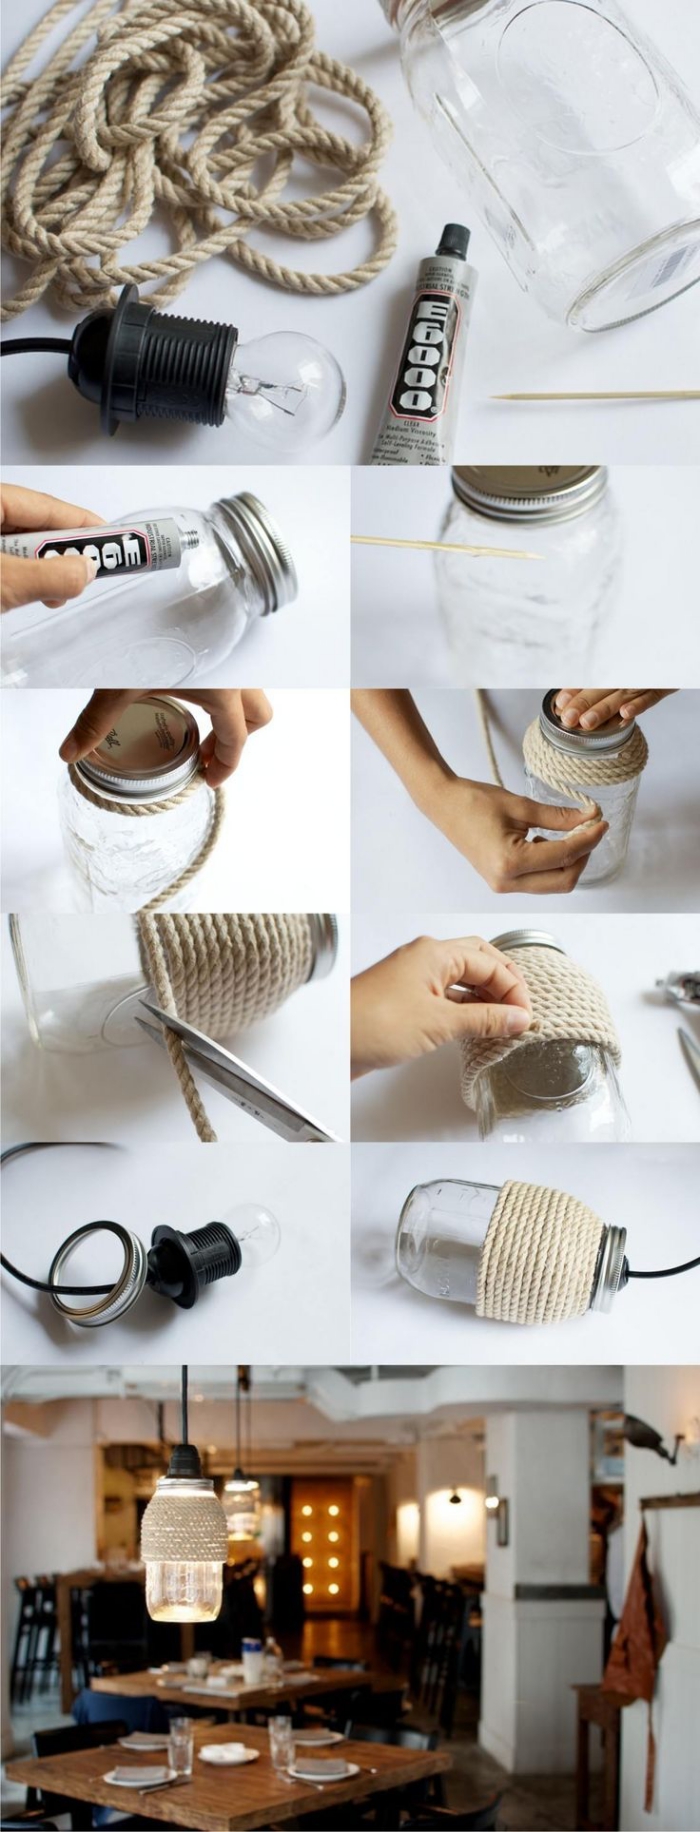 une lampe bocal diy habillée de la corde, idée de bricolage facile avec un objet recyclé